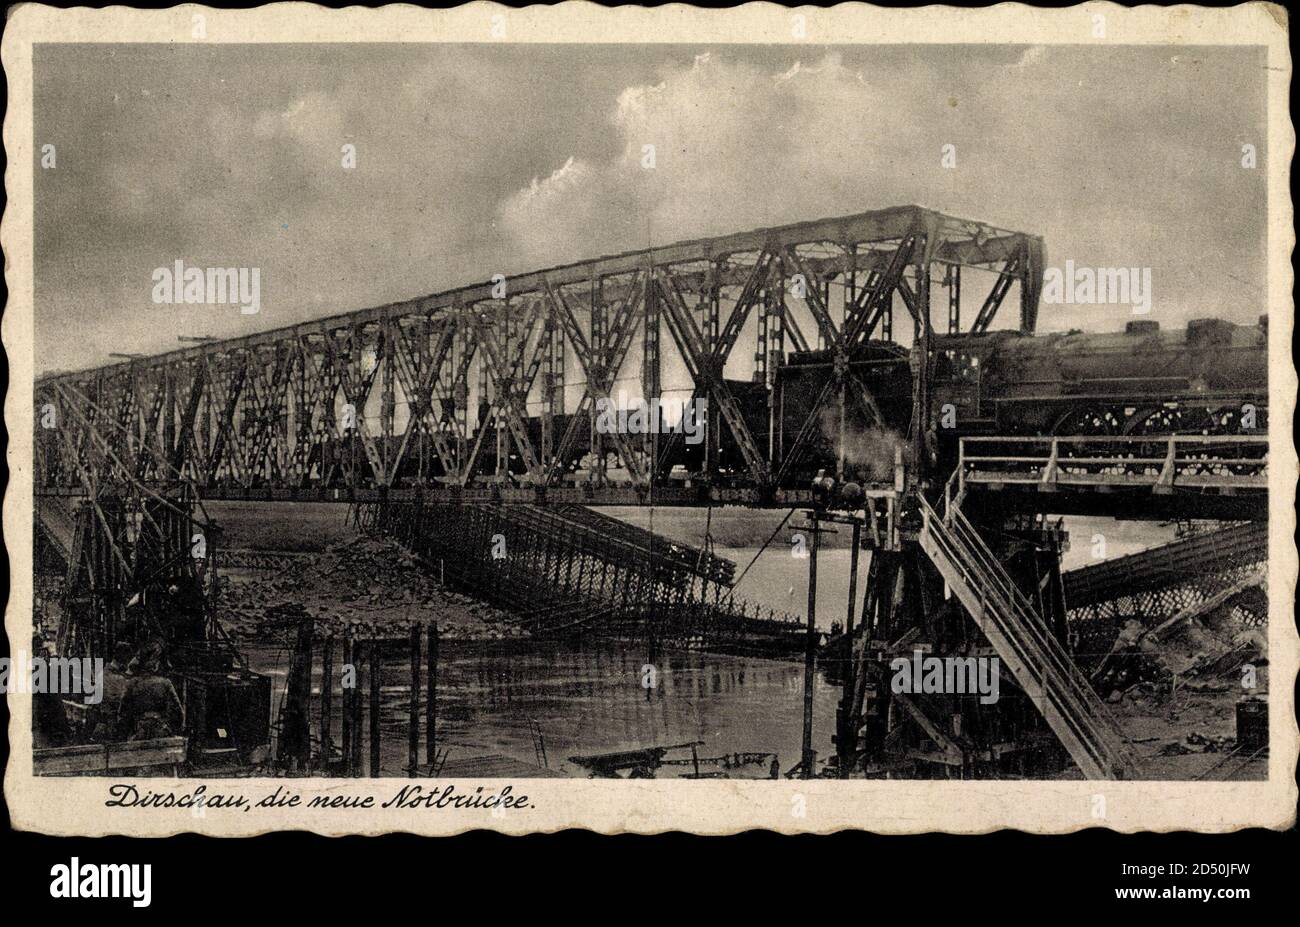 Dirschau Polen, die neue Notbrücke mit Lokomotive | usage worldwide Stock Photo